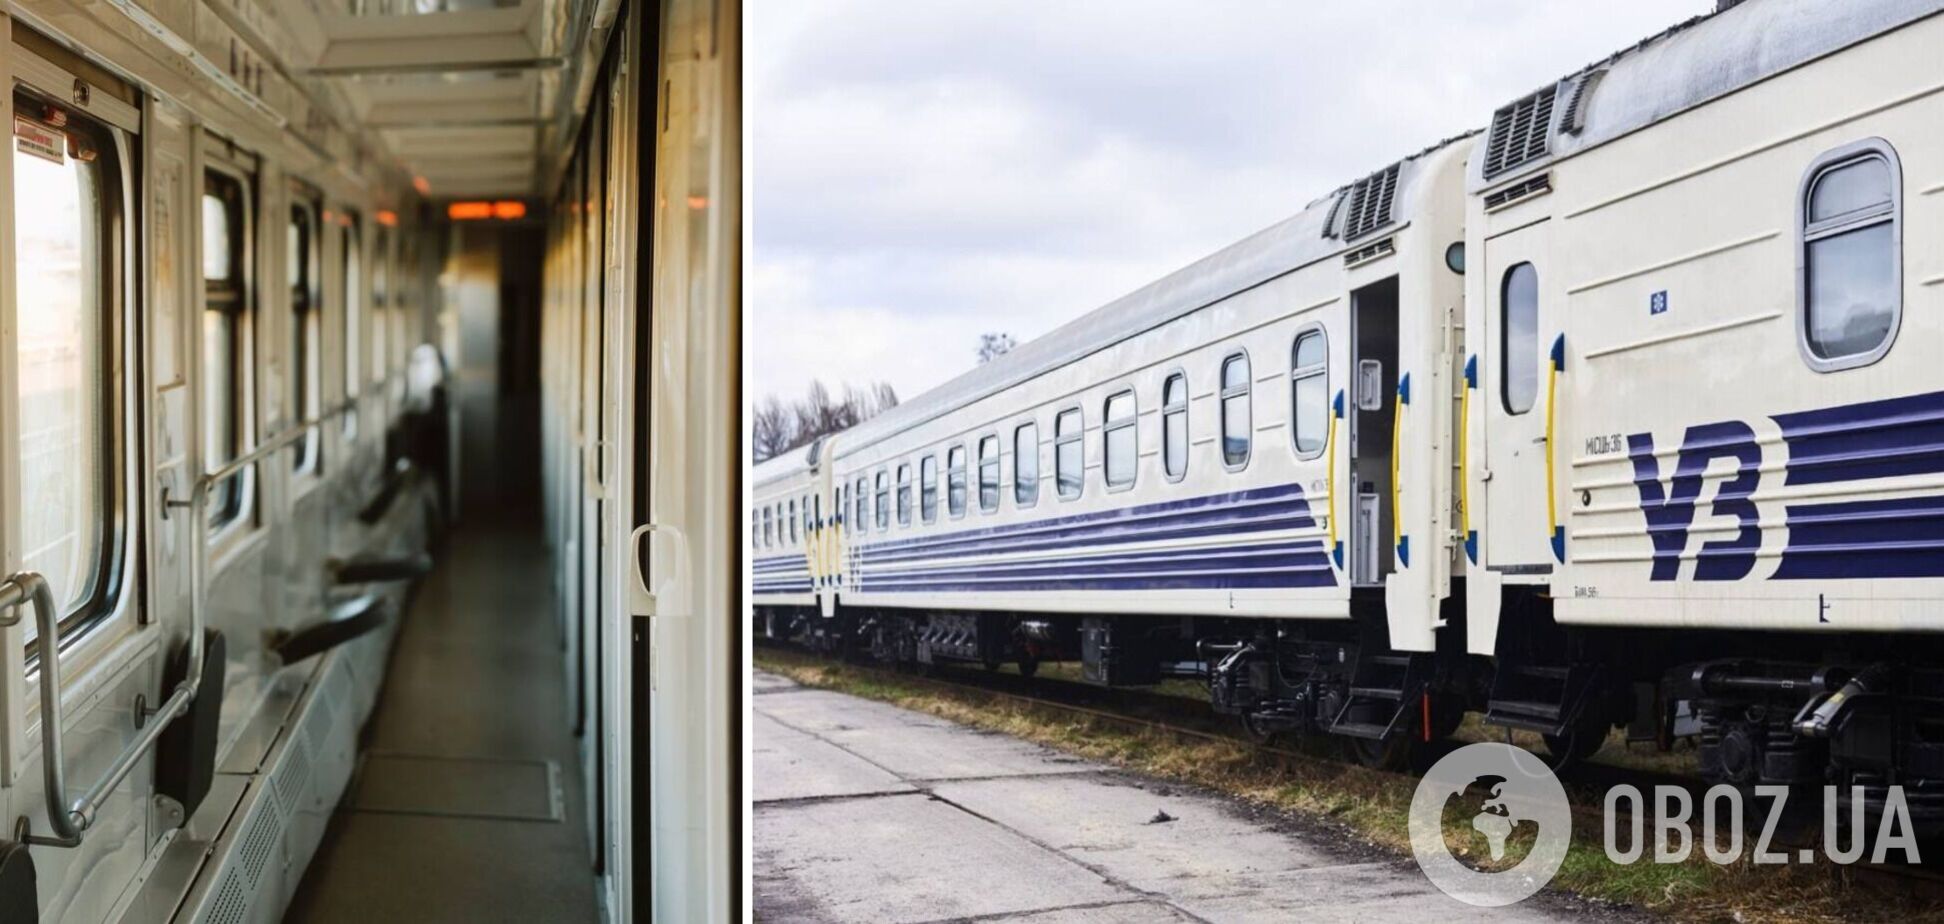 Украинцам разрешают не платить за билеты на поезд полную цену